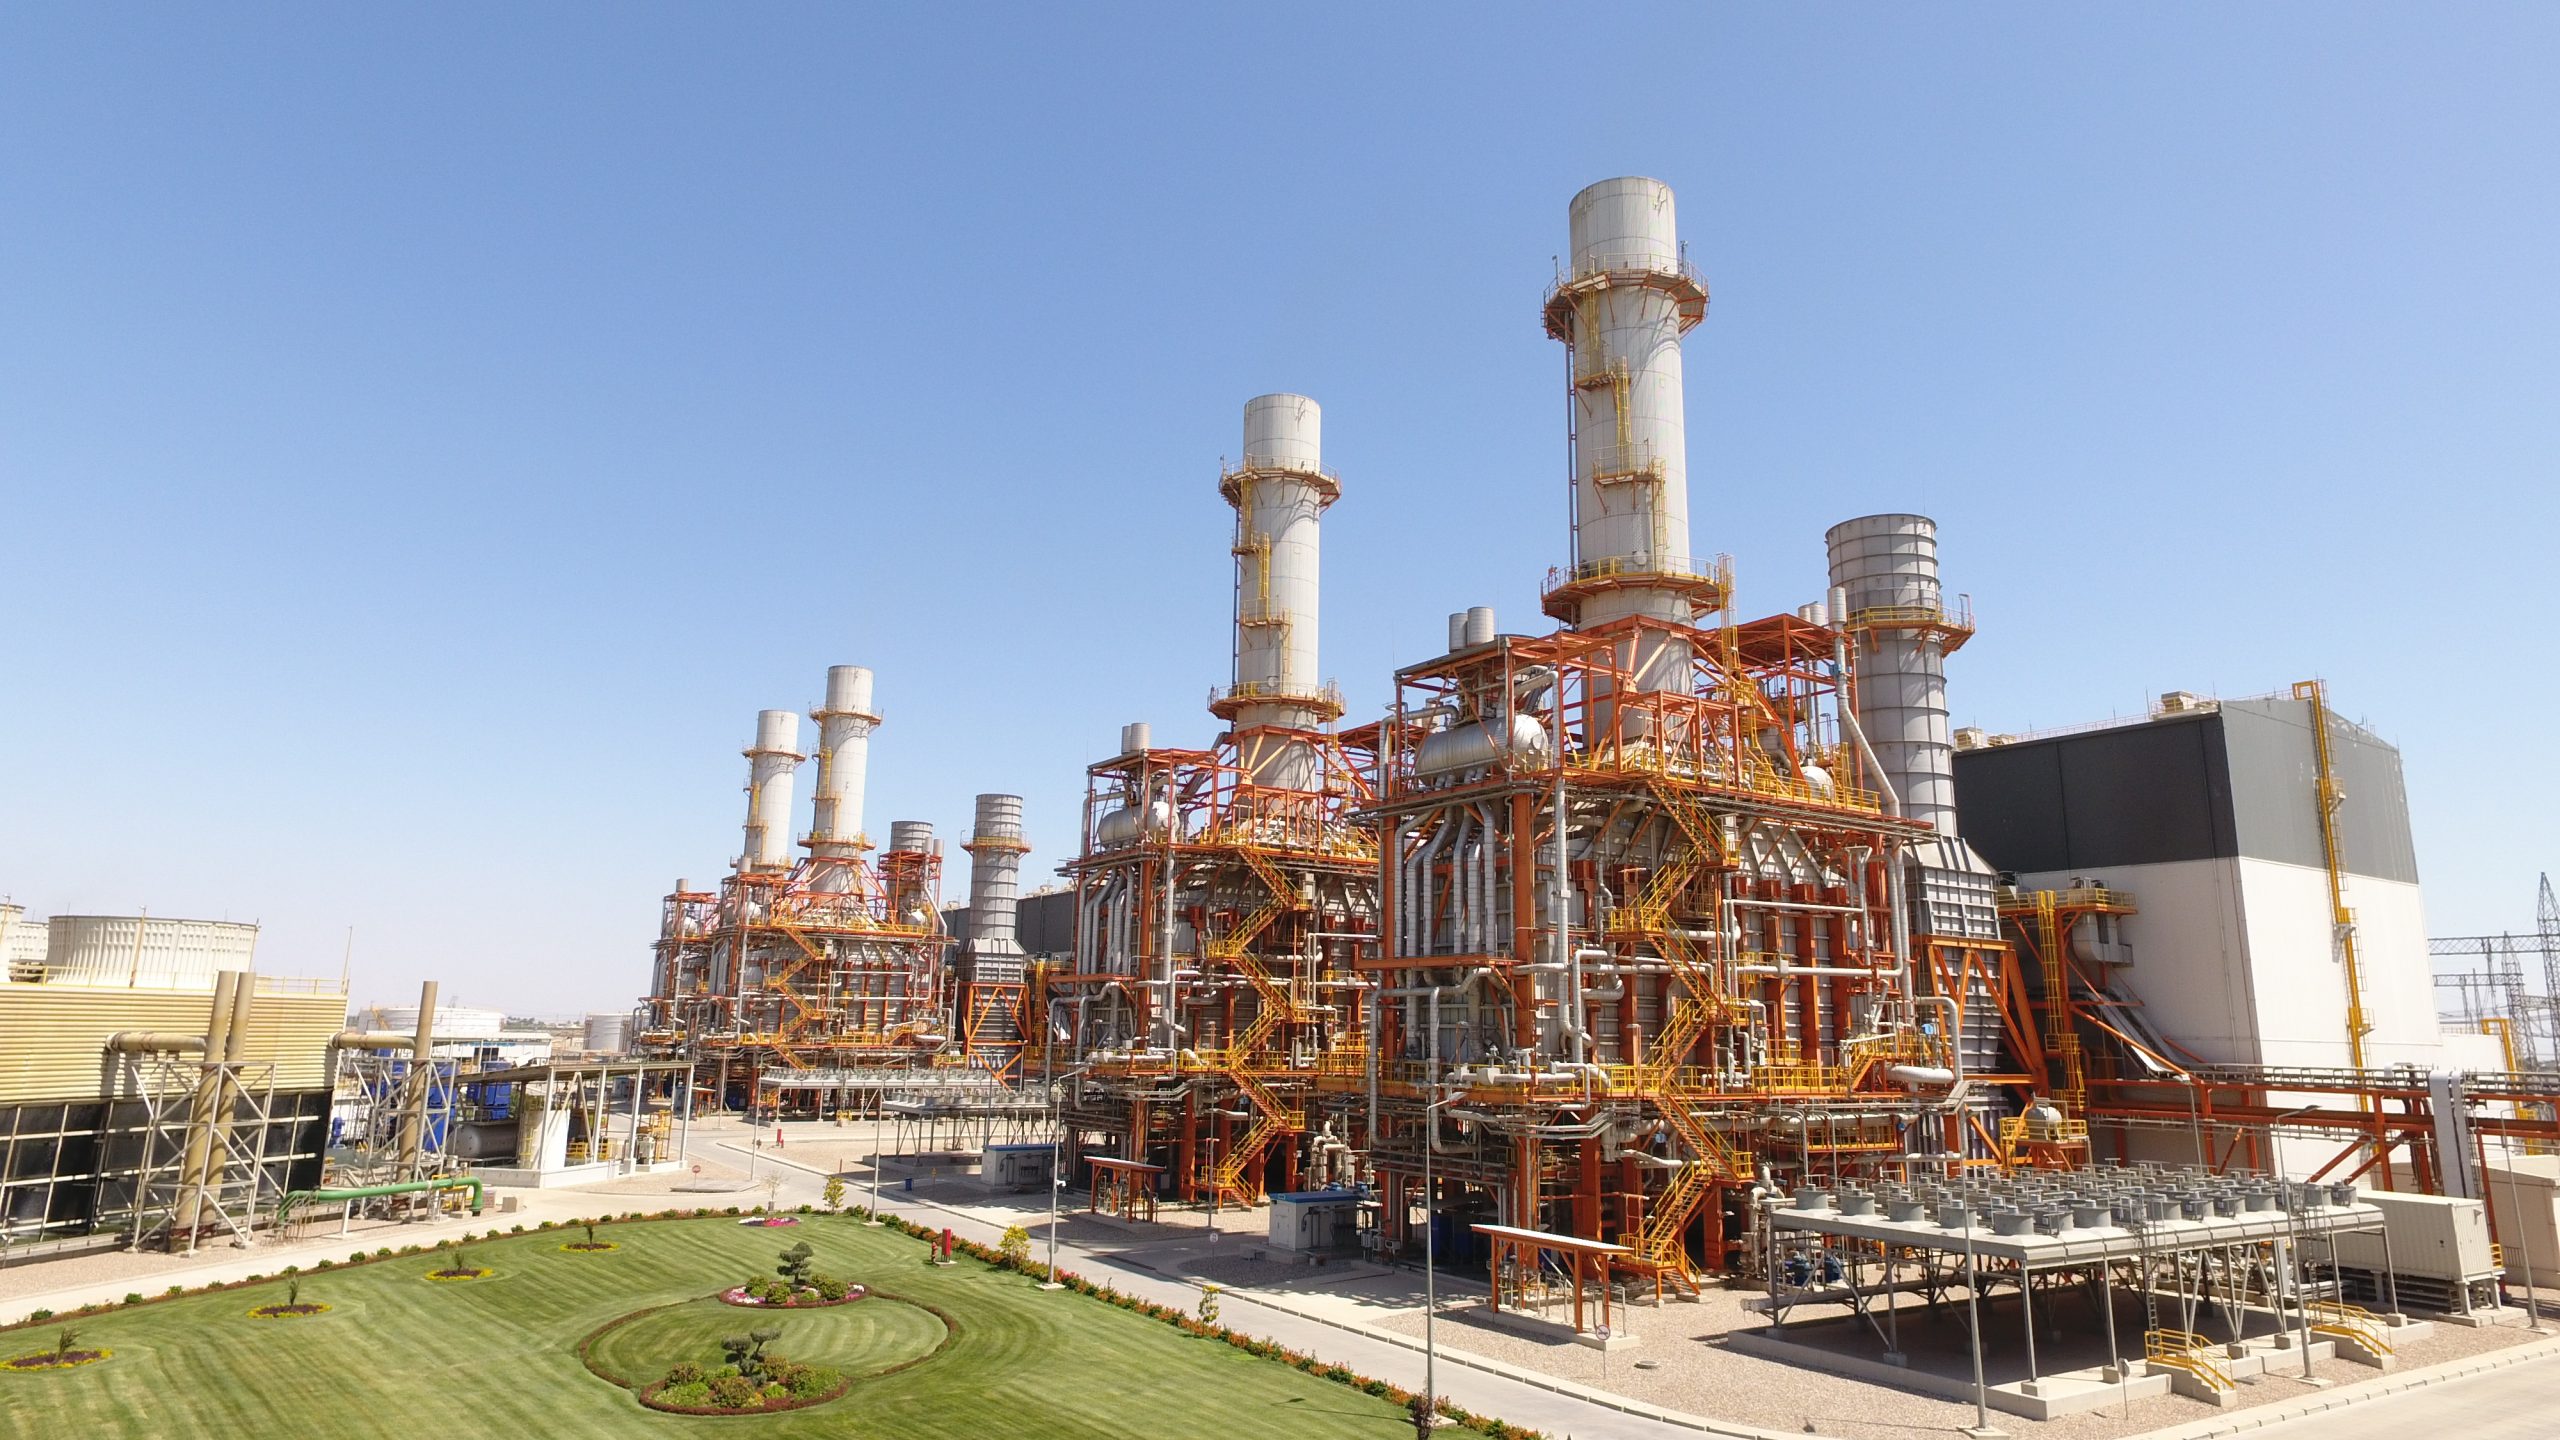 ΑΒΑΞ: Αναλαμβάνει έργο 82 εκατ. δολαρίων στο Ιράκ – Θα κατασκευάσει μονάδα ηλεκτροπαραγωγής